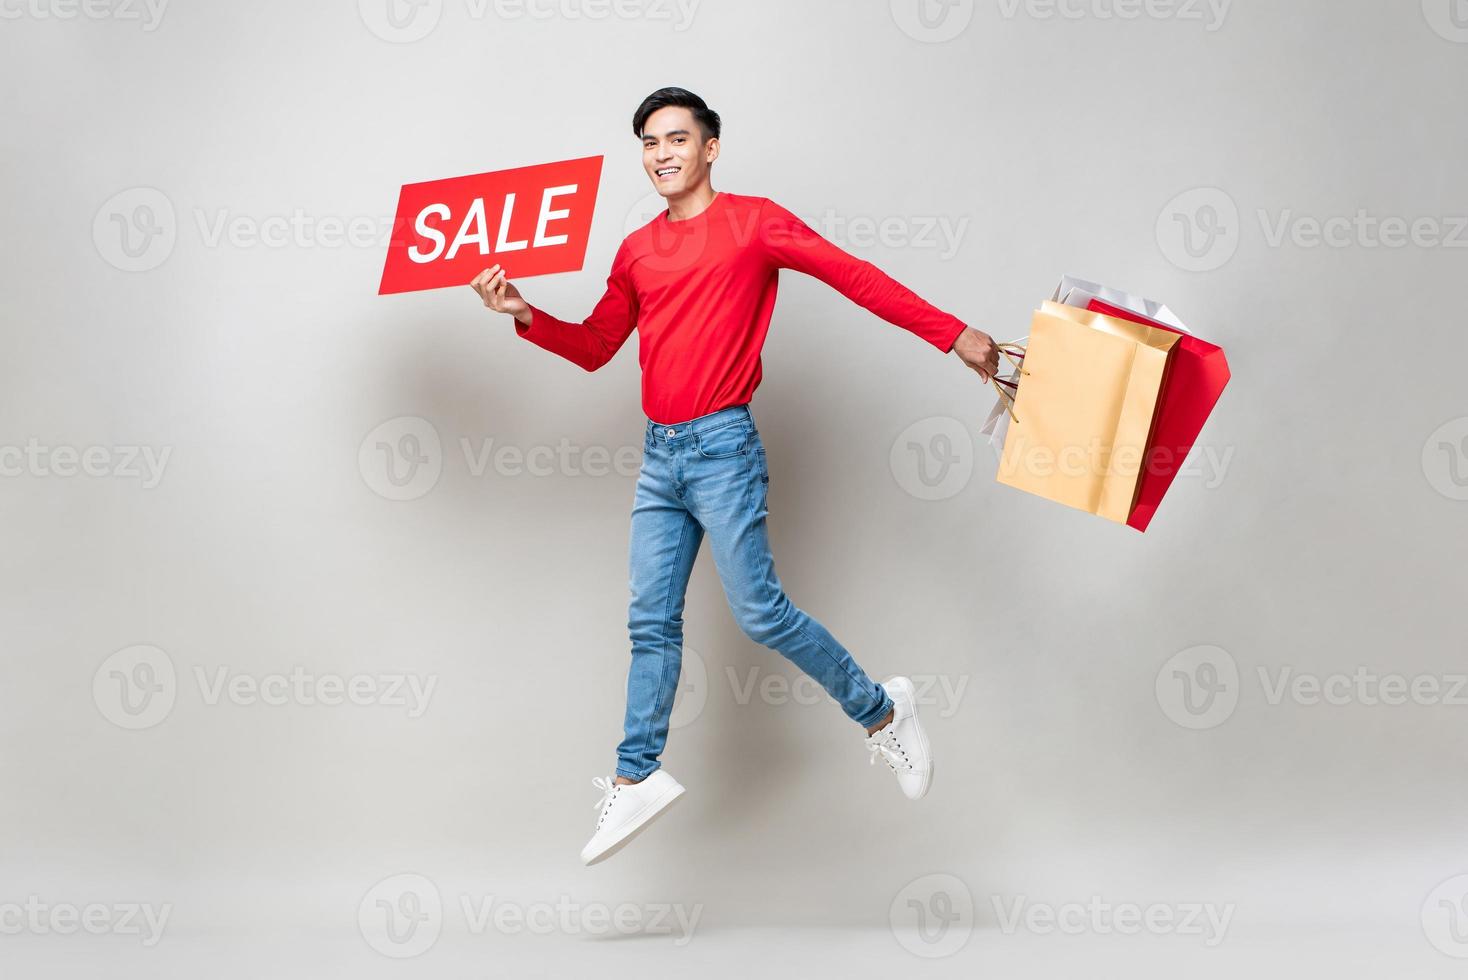 Überraschter asiatischer Mann, der Einkaufstüten und rotes Verkaufsschild hält, das in isoliertem hellgrauem Studiohintergrund für das chinesische Neujahrsverkaufskonzept springt foto